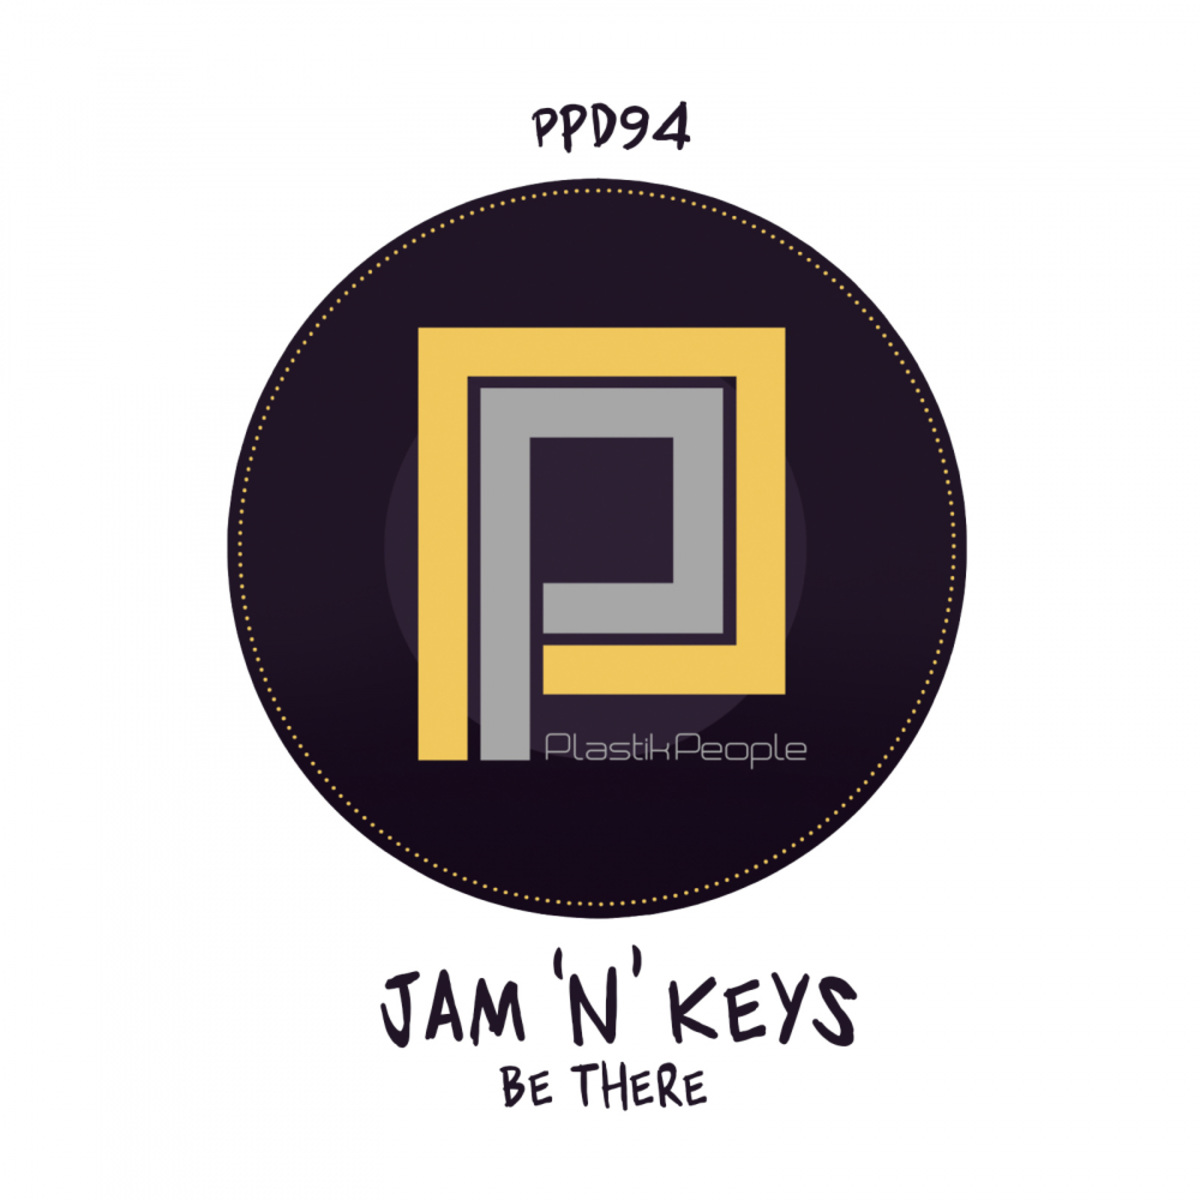 Jam 'N' Keys - Be There / Plastik People Digital